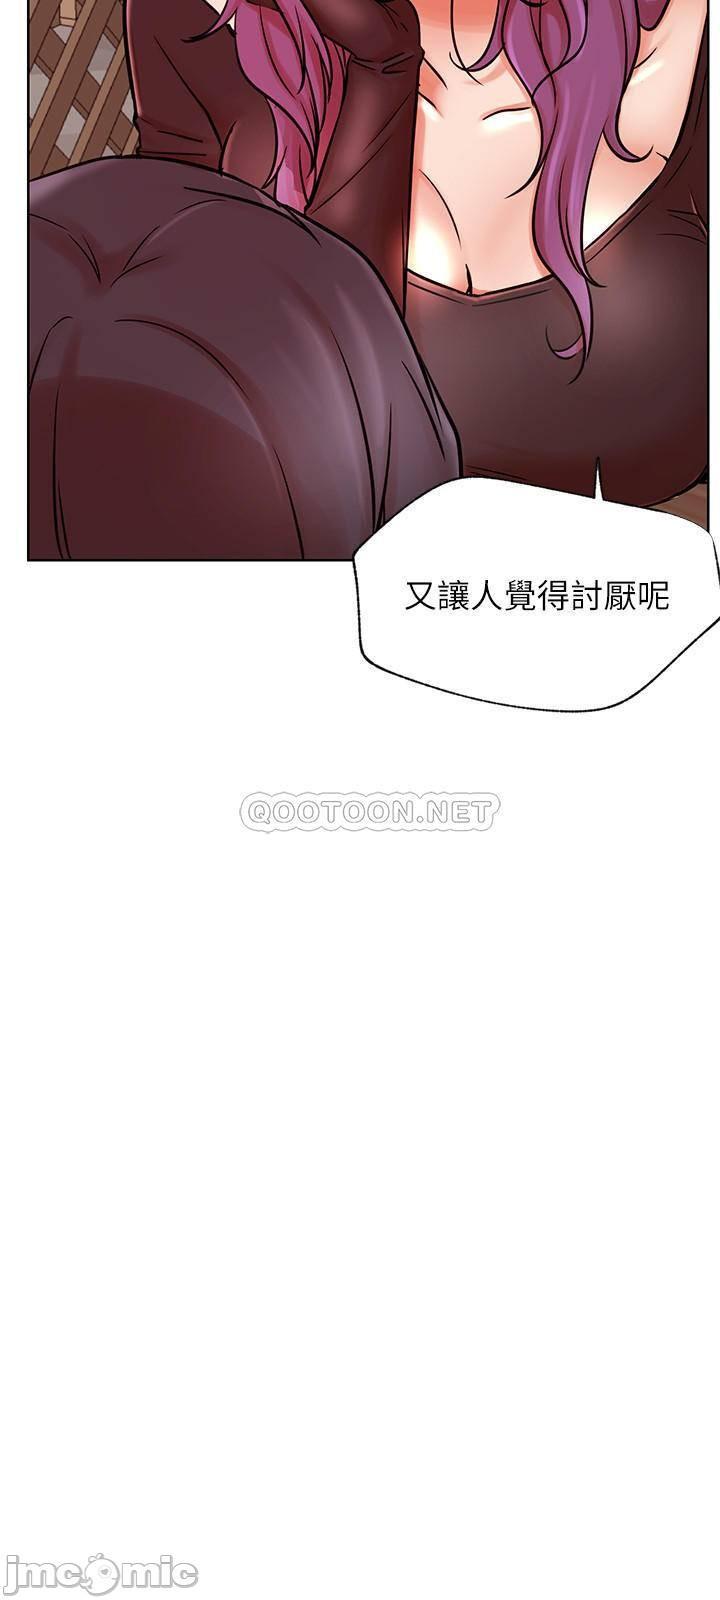 《网红私生活》漫画 第35话 - 耀威哥，今晚可以安慰我吗?